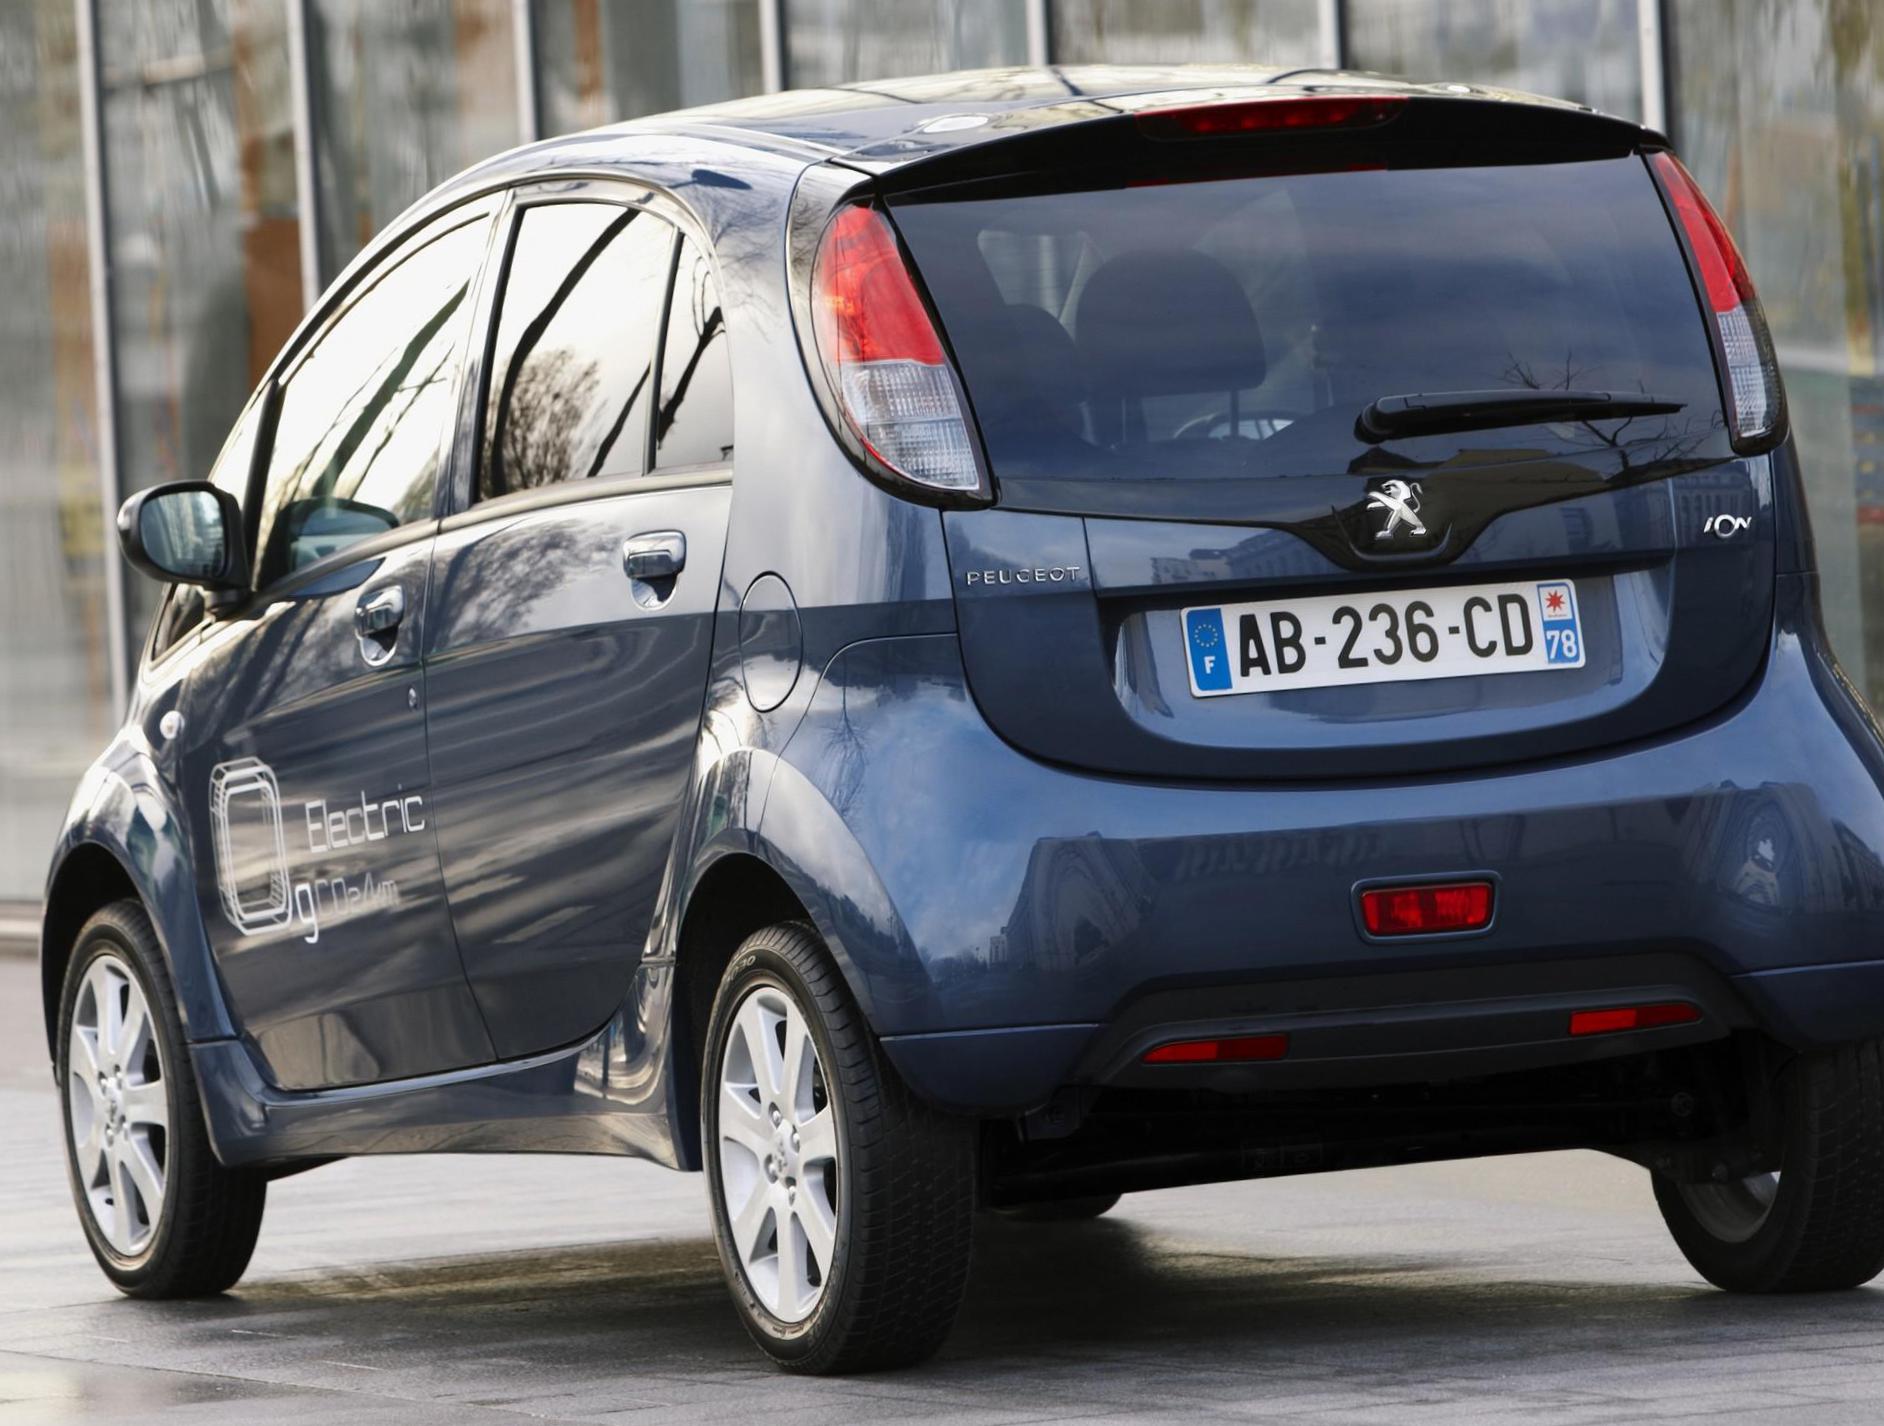 iOn Peugeot model 2012